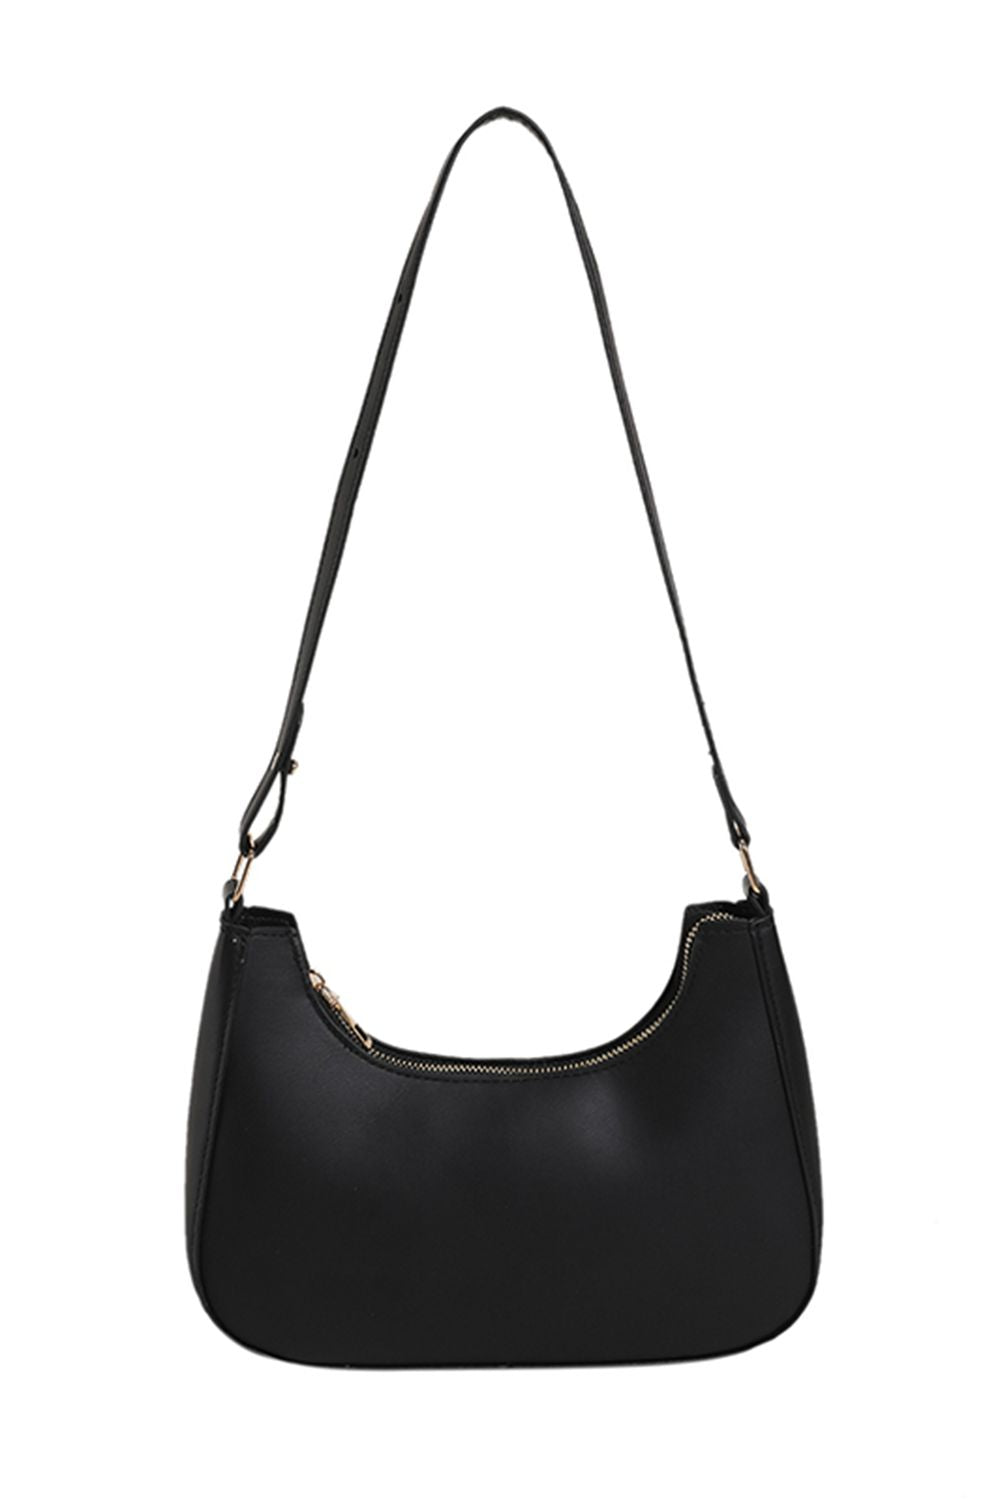 Black PU Leather Shoulder Bag Sentient Beauty Fashions Apaparel &amp; Accessories